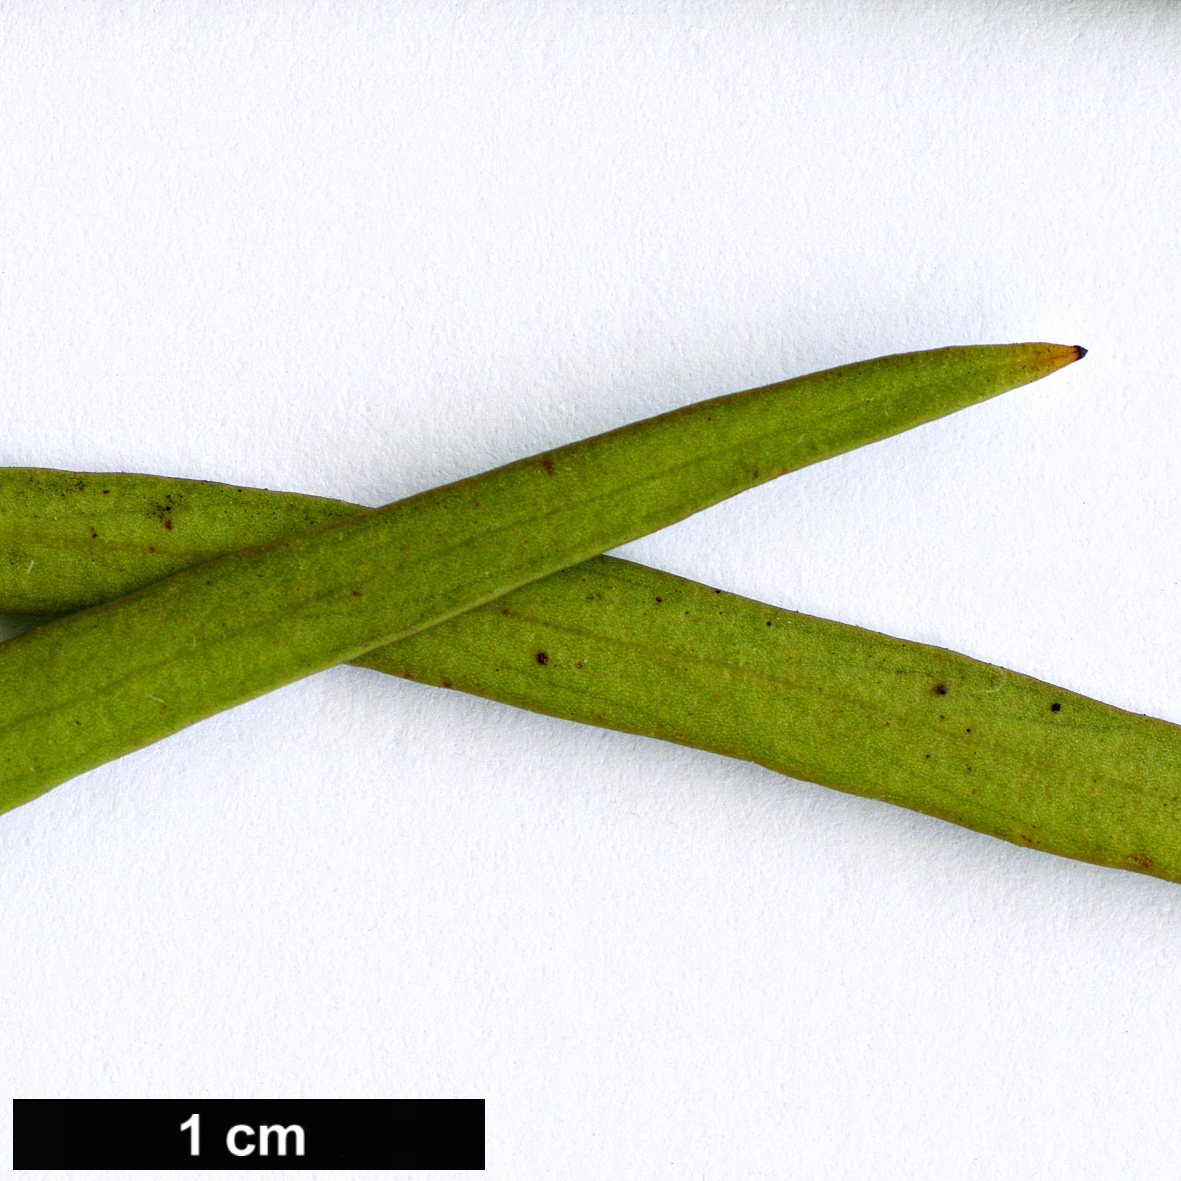 High resolution image: Family: Proteaceae - Genus: Stenocarpus - Taxon: angustifolius